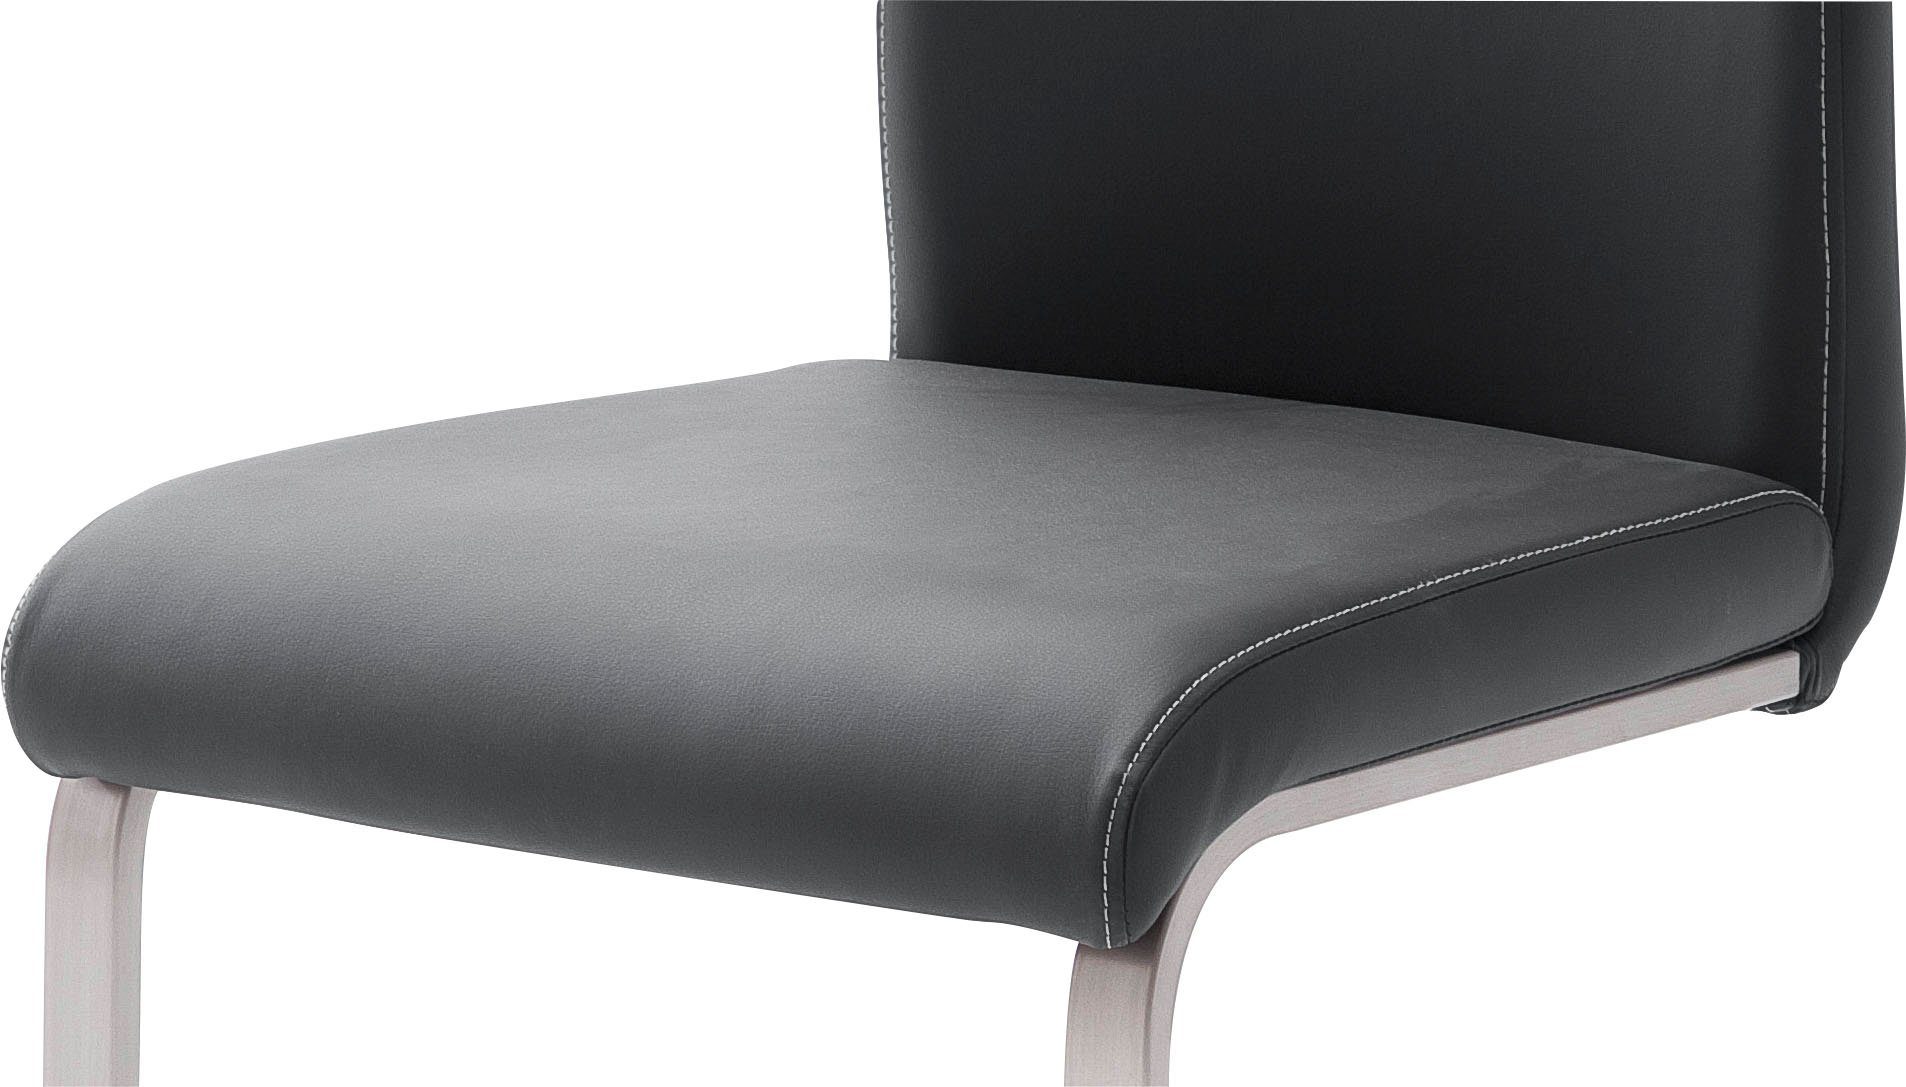 bis Paulo schwarz furniture 4 | kg 120 MCA schwarz Stuhl belastbar (Set, Freischwinger St),